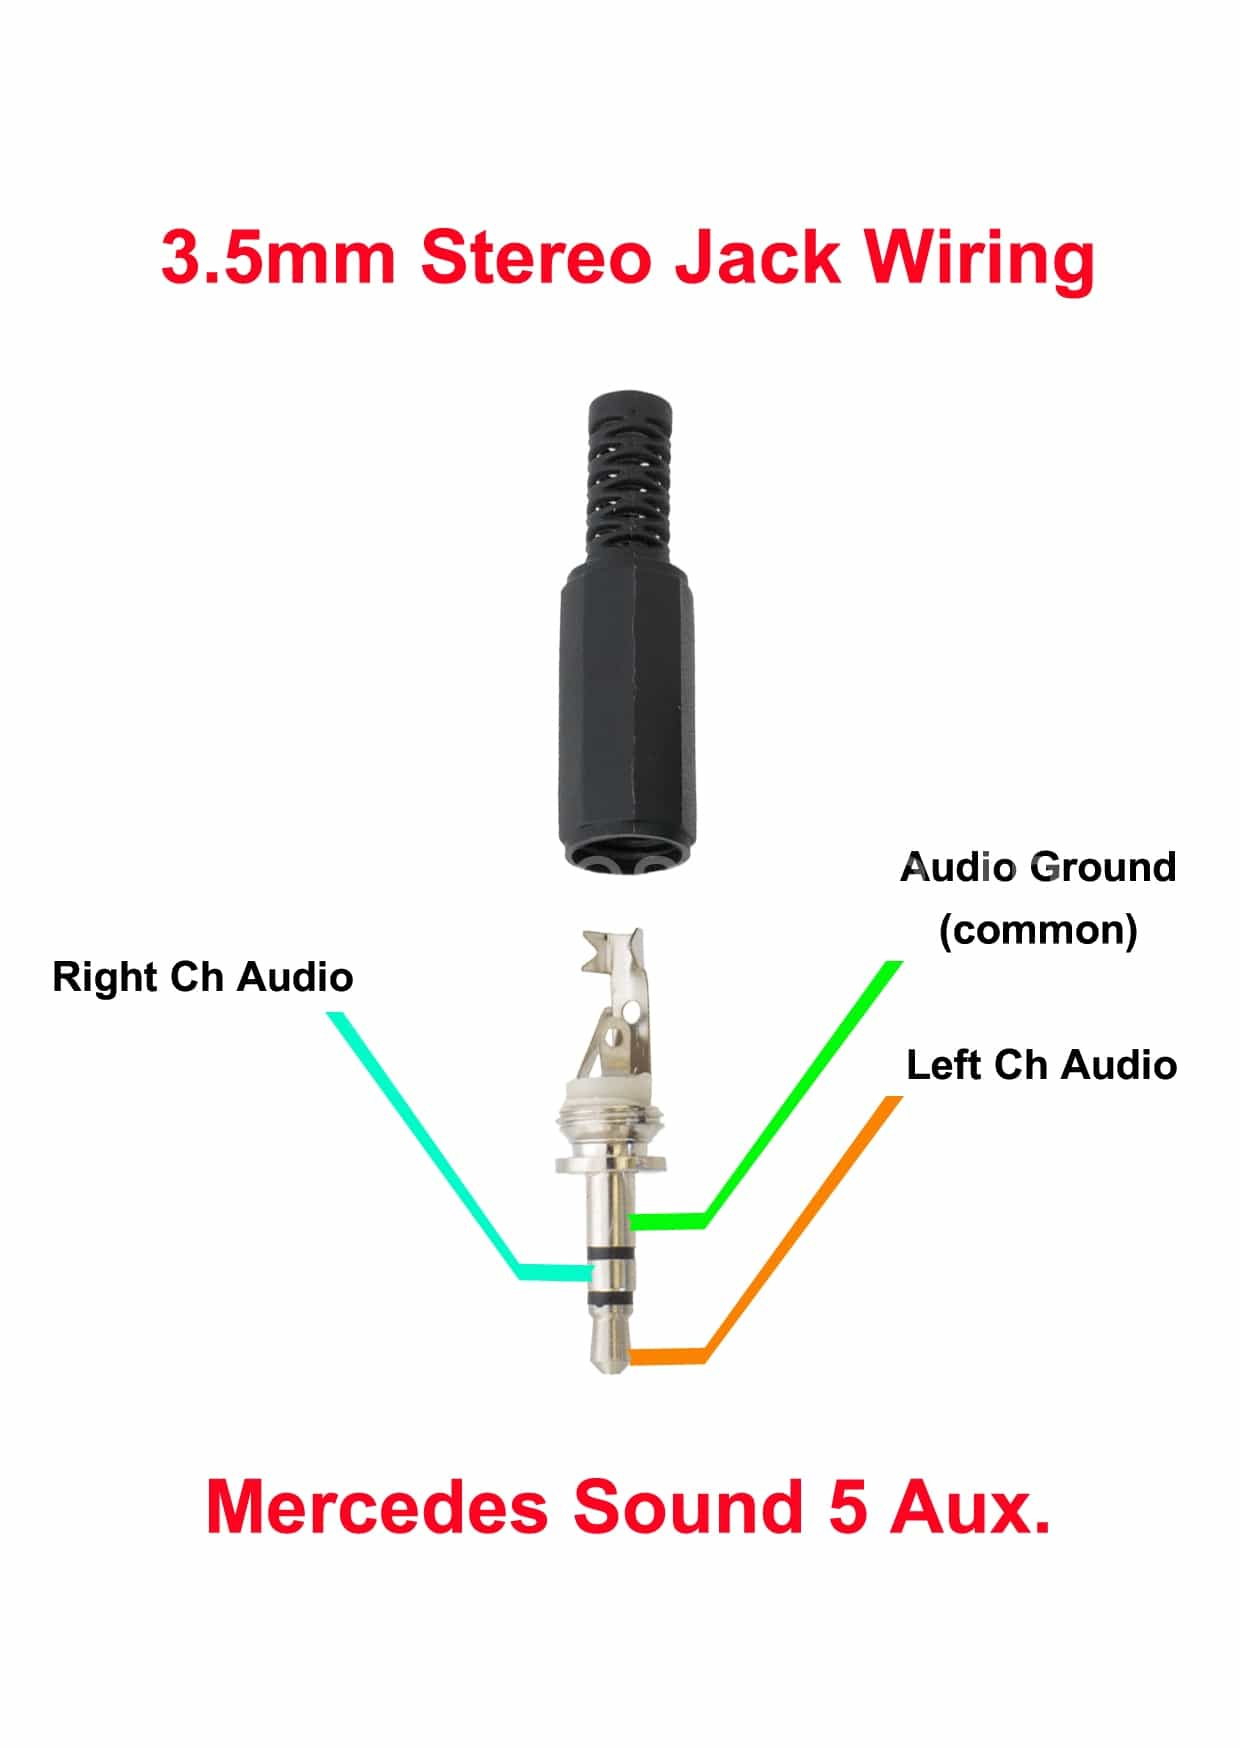 3.5Mm Jack Diagram - Wiring Diagrams Hubs - Stereo Headphone Jack Wiring Diagram